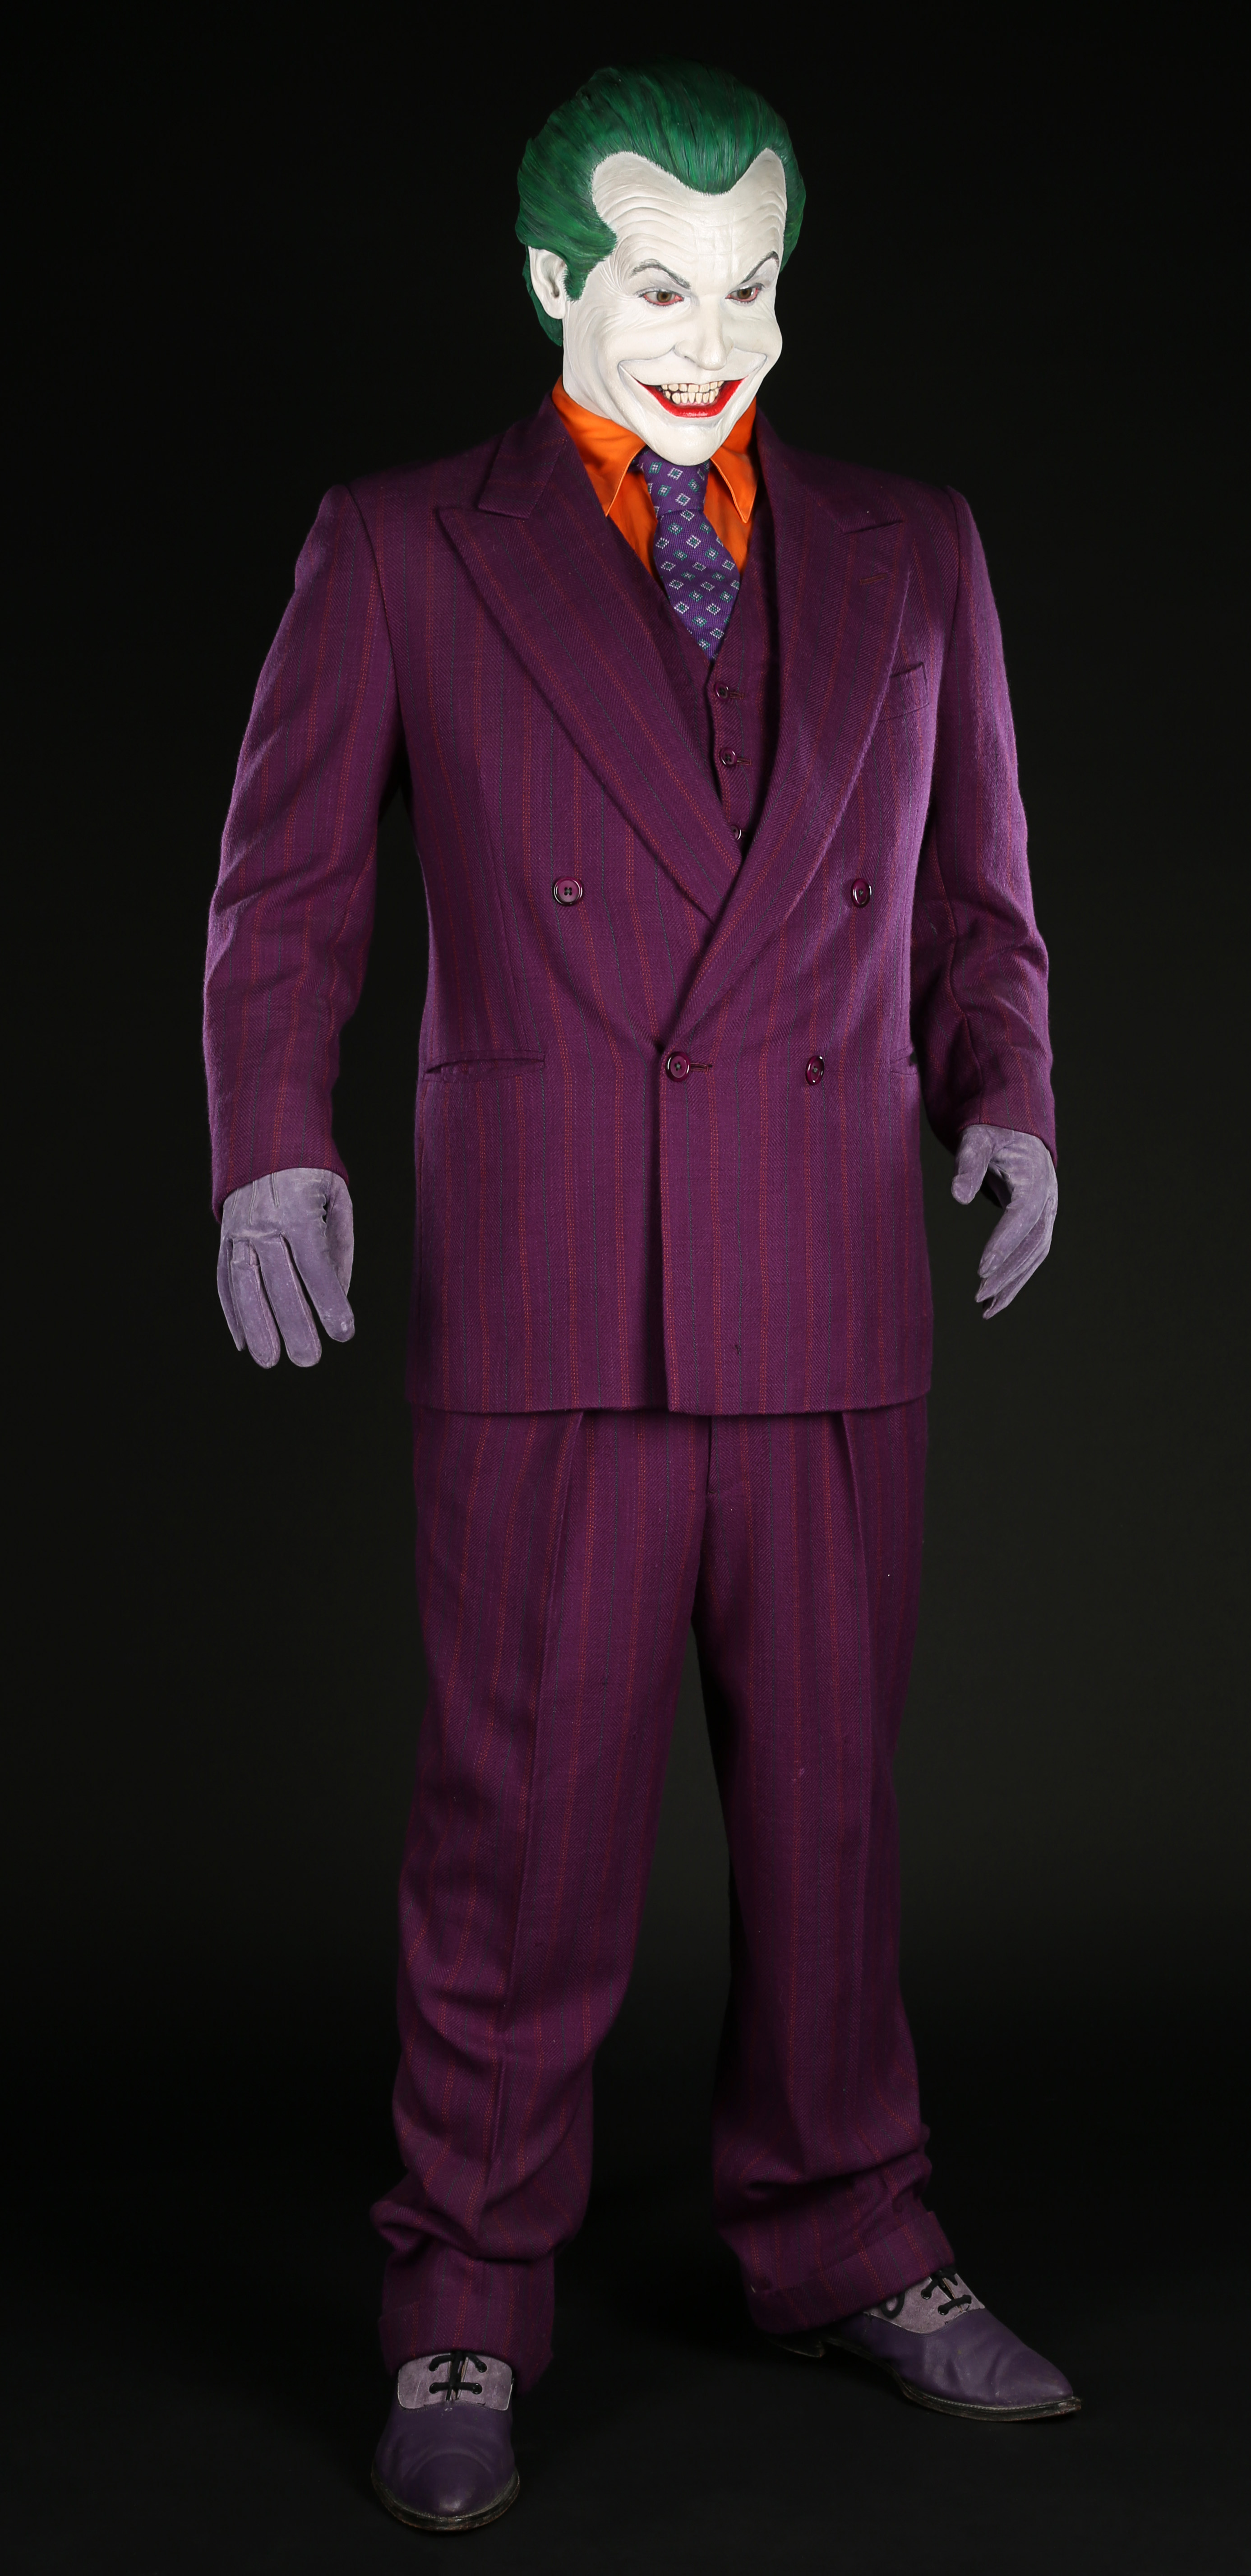 The Joker Costume for Men